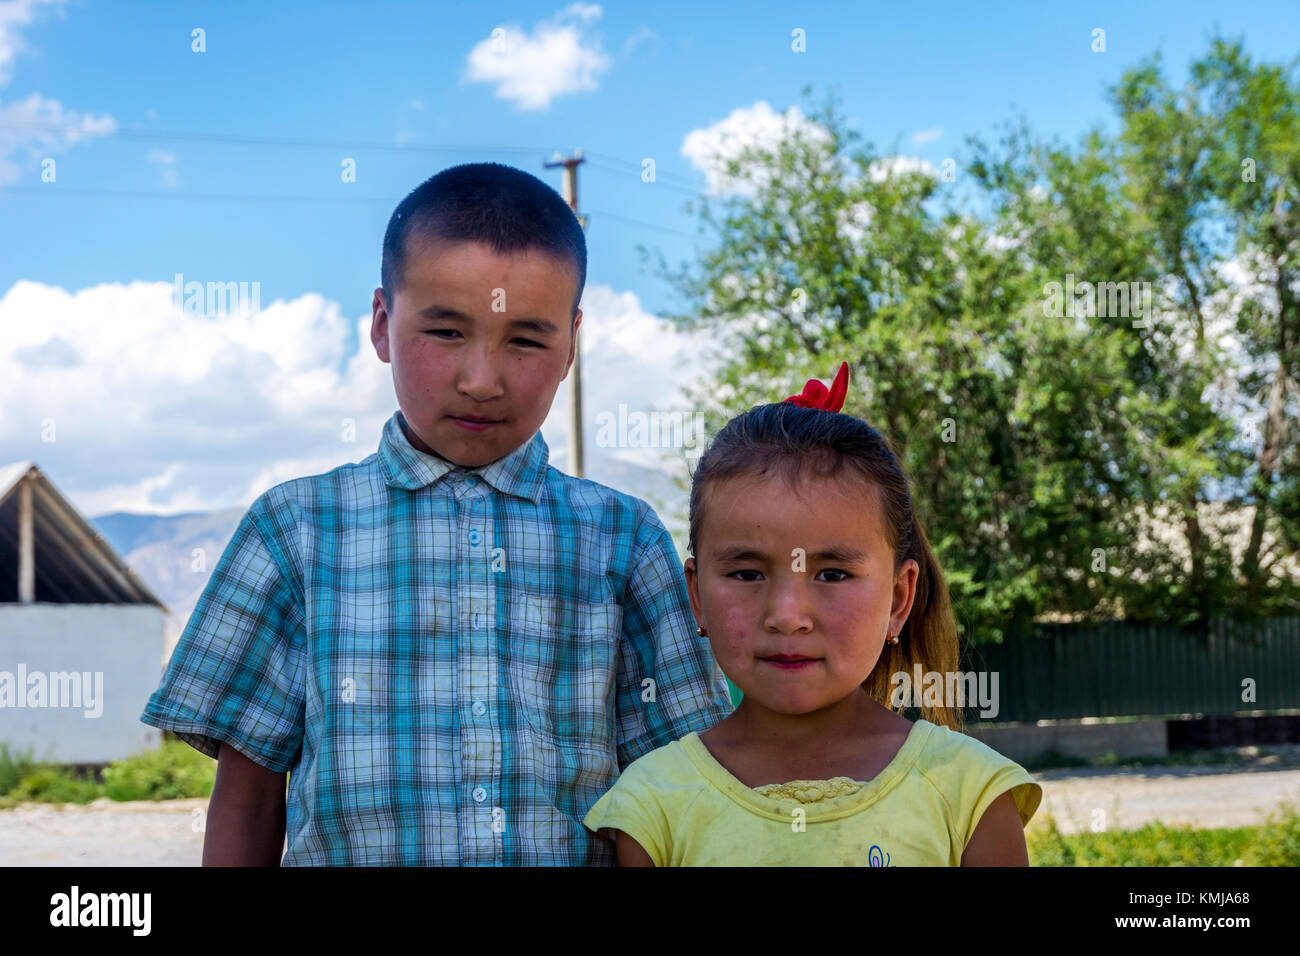 UGUT, Kirghizistan - 16 agosto: Fratelli, un fratello e una sorella in posa con gravi l'espressione del viso. Ugut è un remoto villaggio in Kirghizistan. Agosto 201 Foto Stock